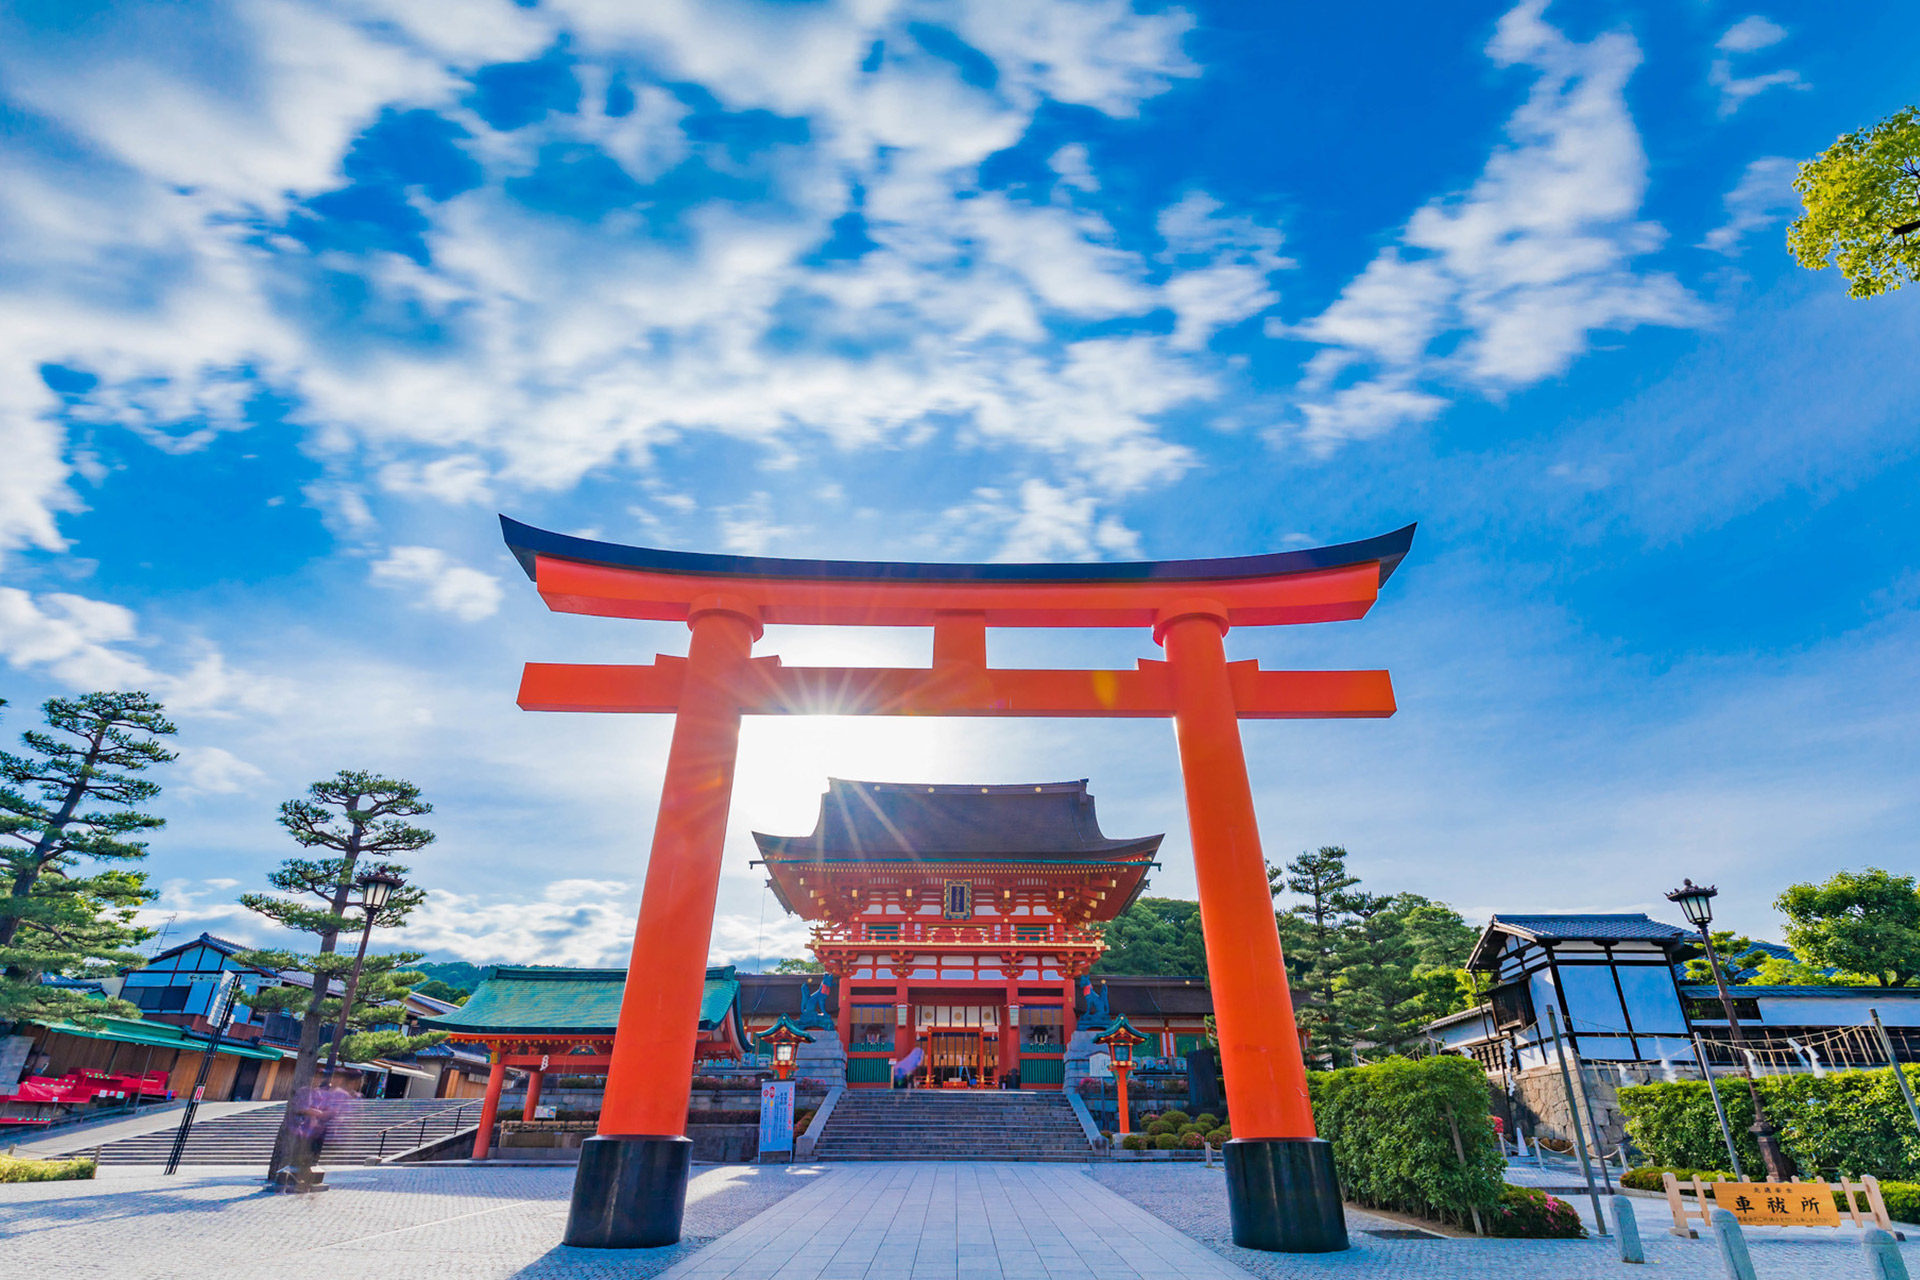 京都で冬のデートにぴったりのおすすめスポットをご紹介します Caedekyoto カエデ京都 紅葉と伝統美を引き継ぐバッグ